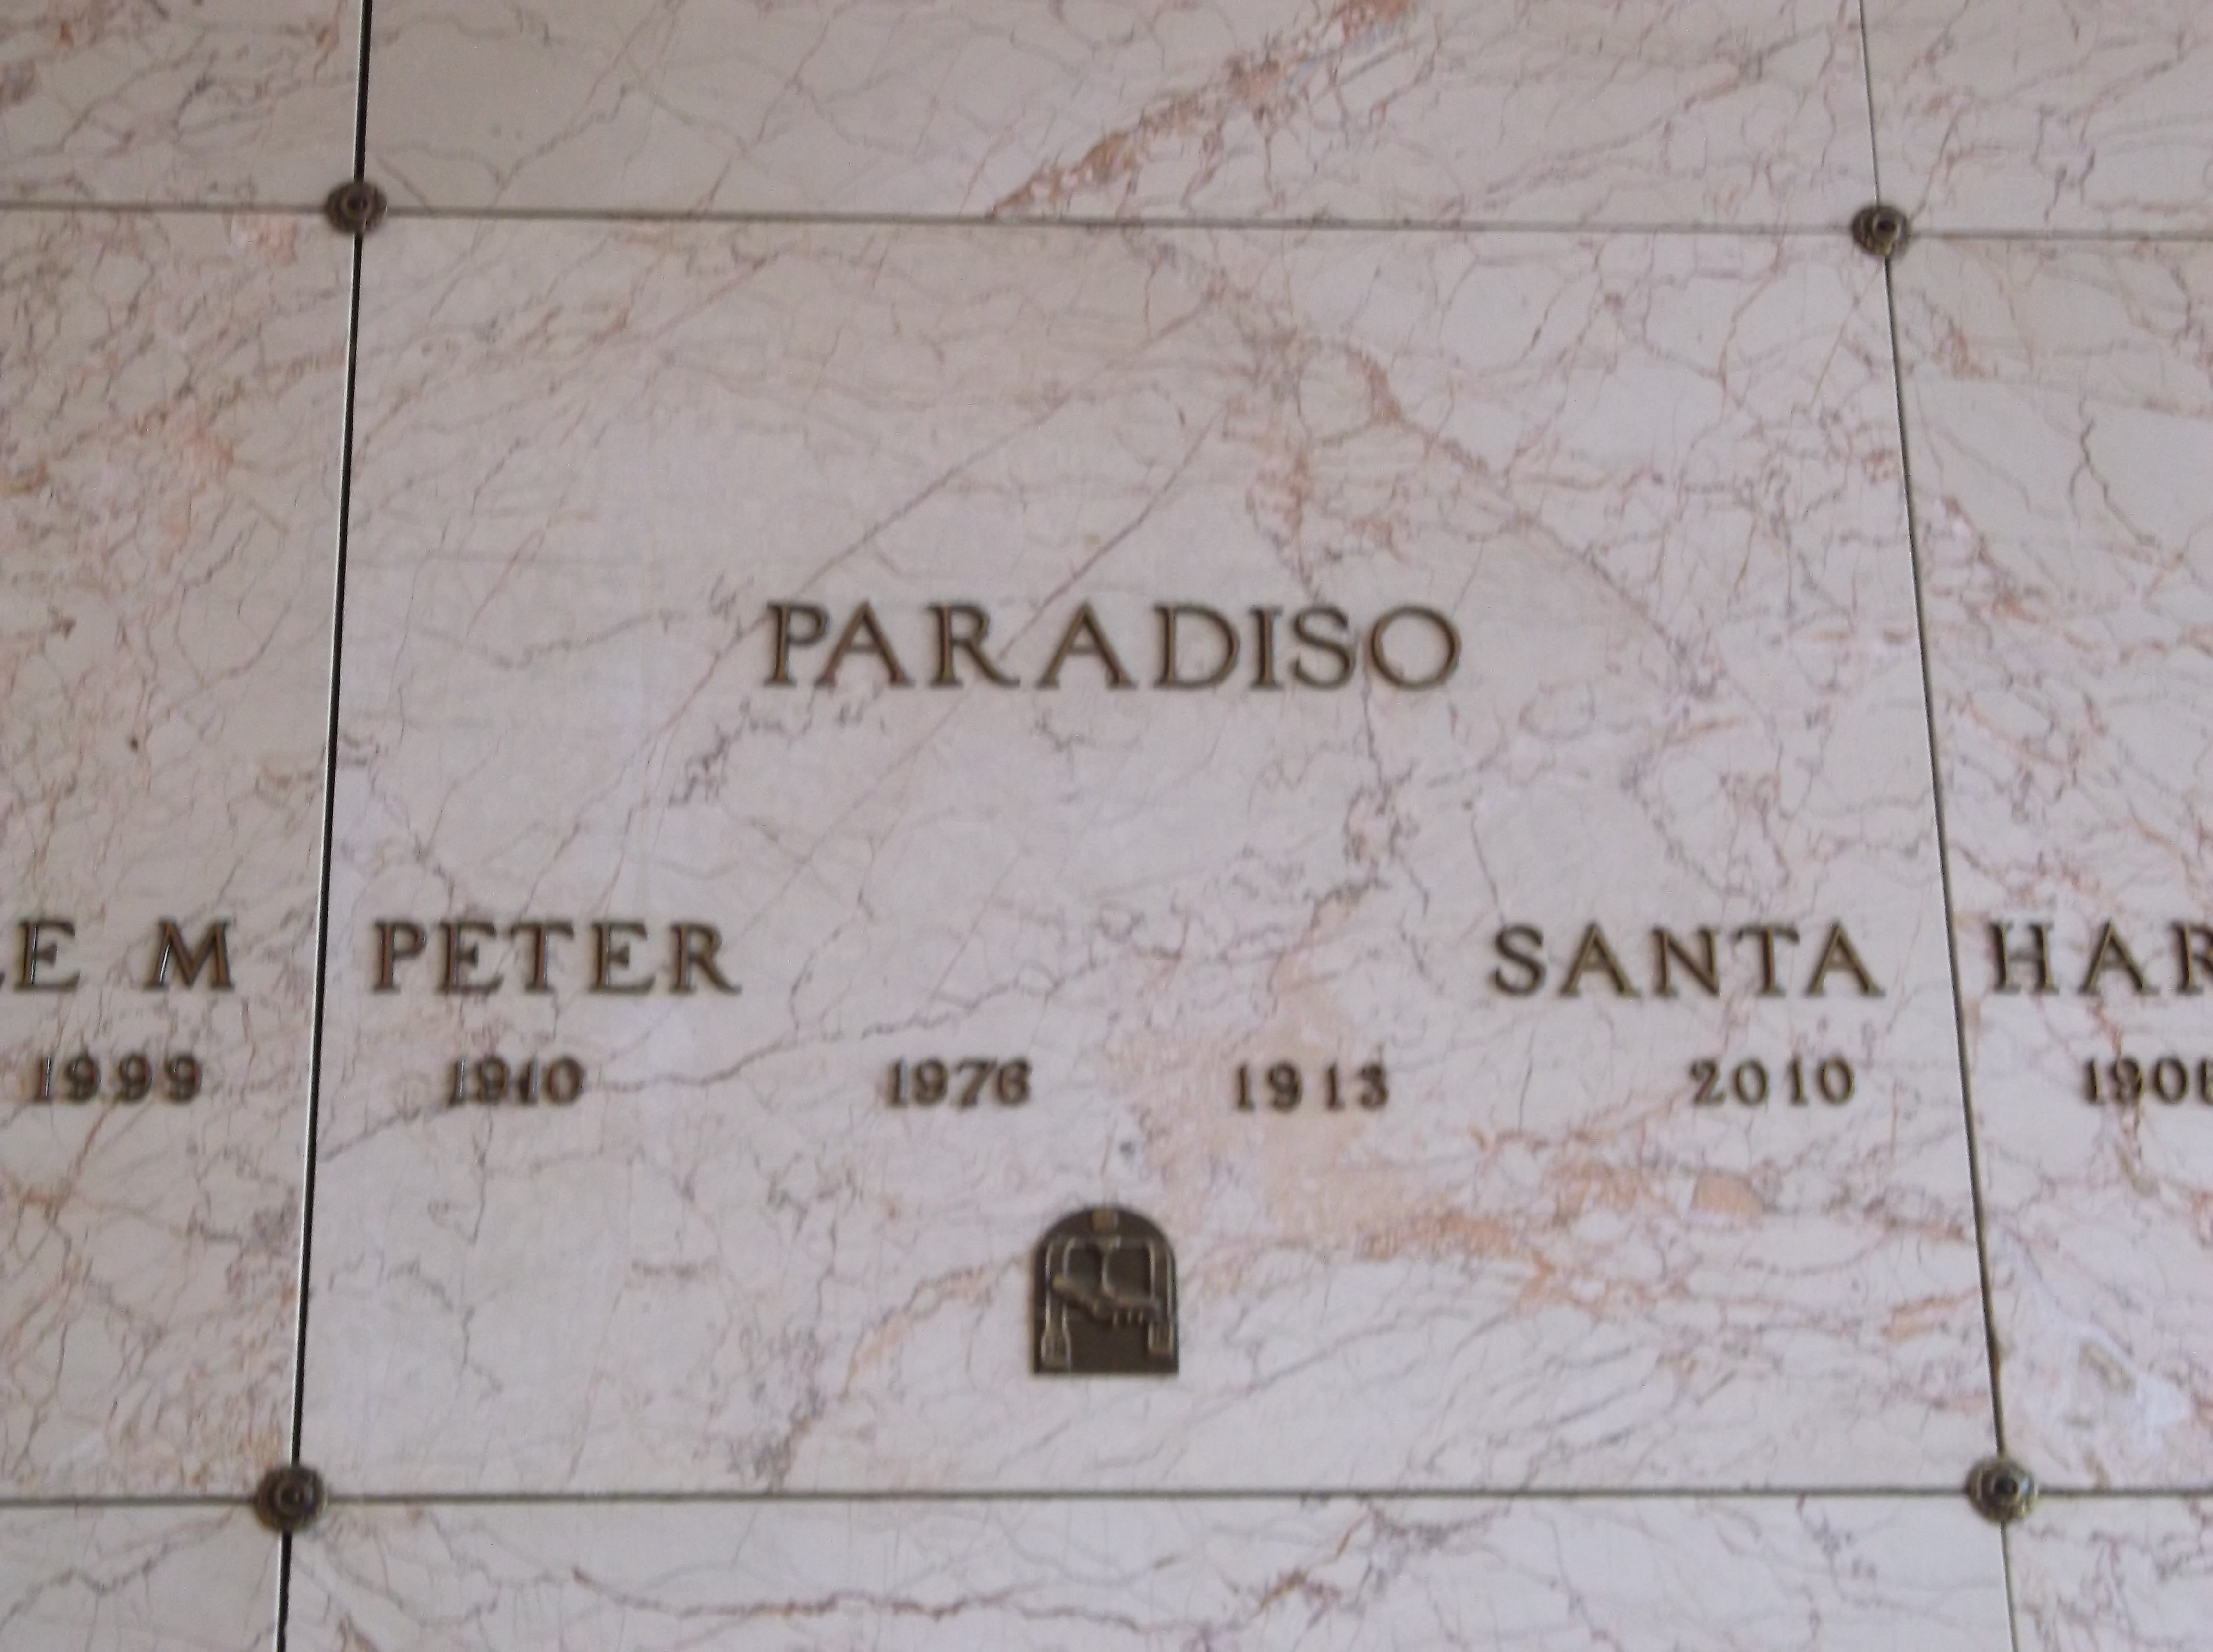 Peter Paradiso